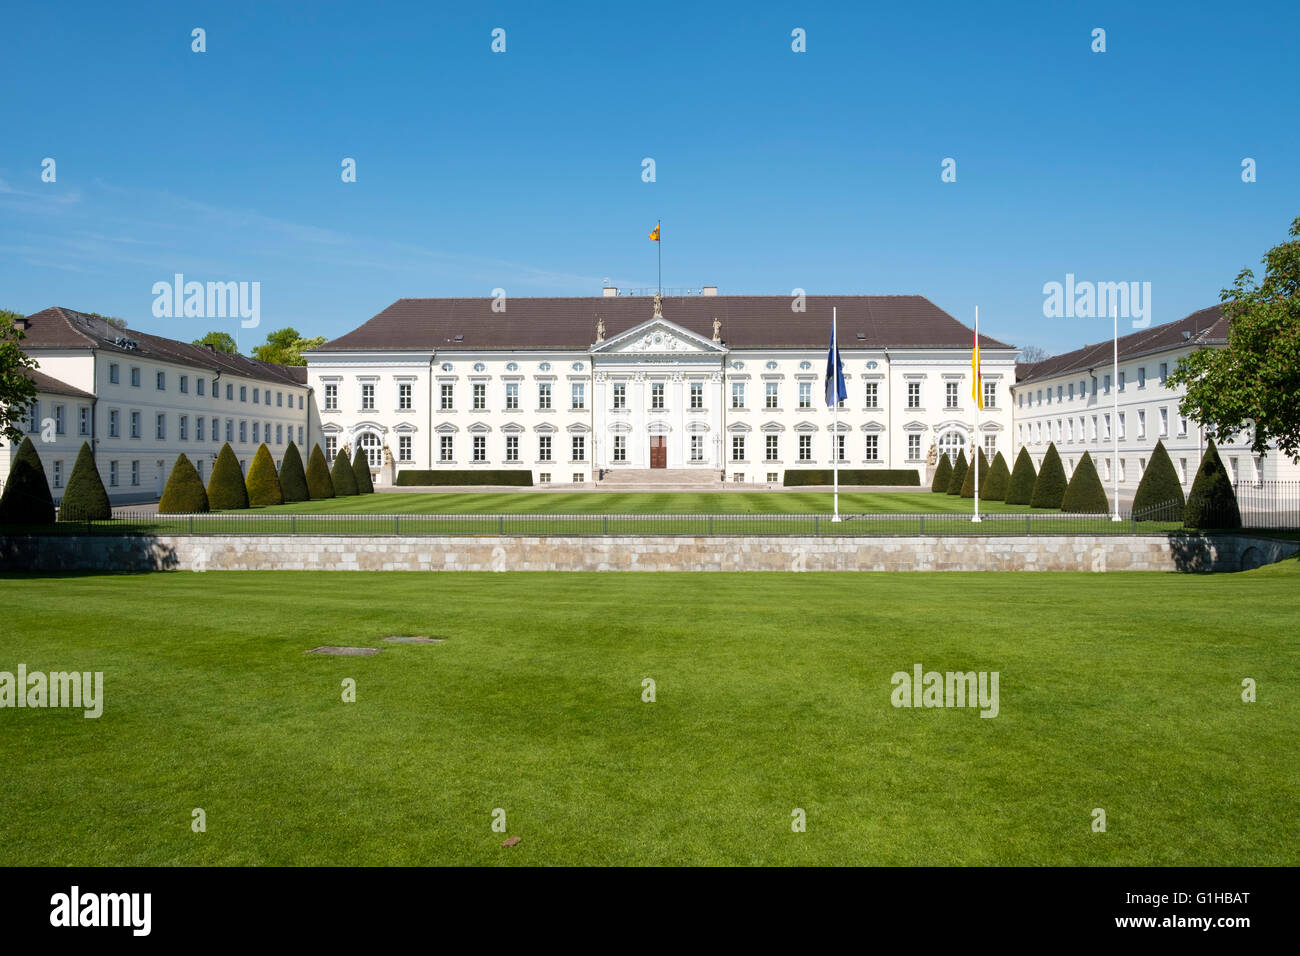 Le château de Bellevue accueil du président de l'Allemagne à Berlin en Allemagne. Banque D'Images